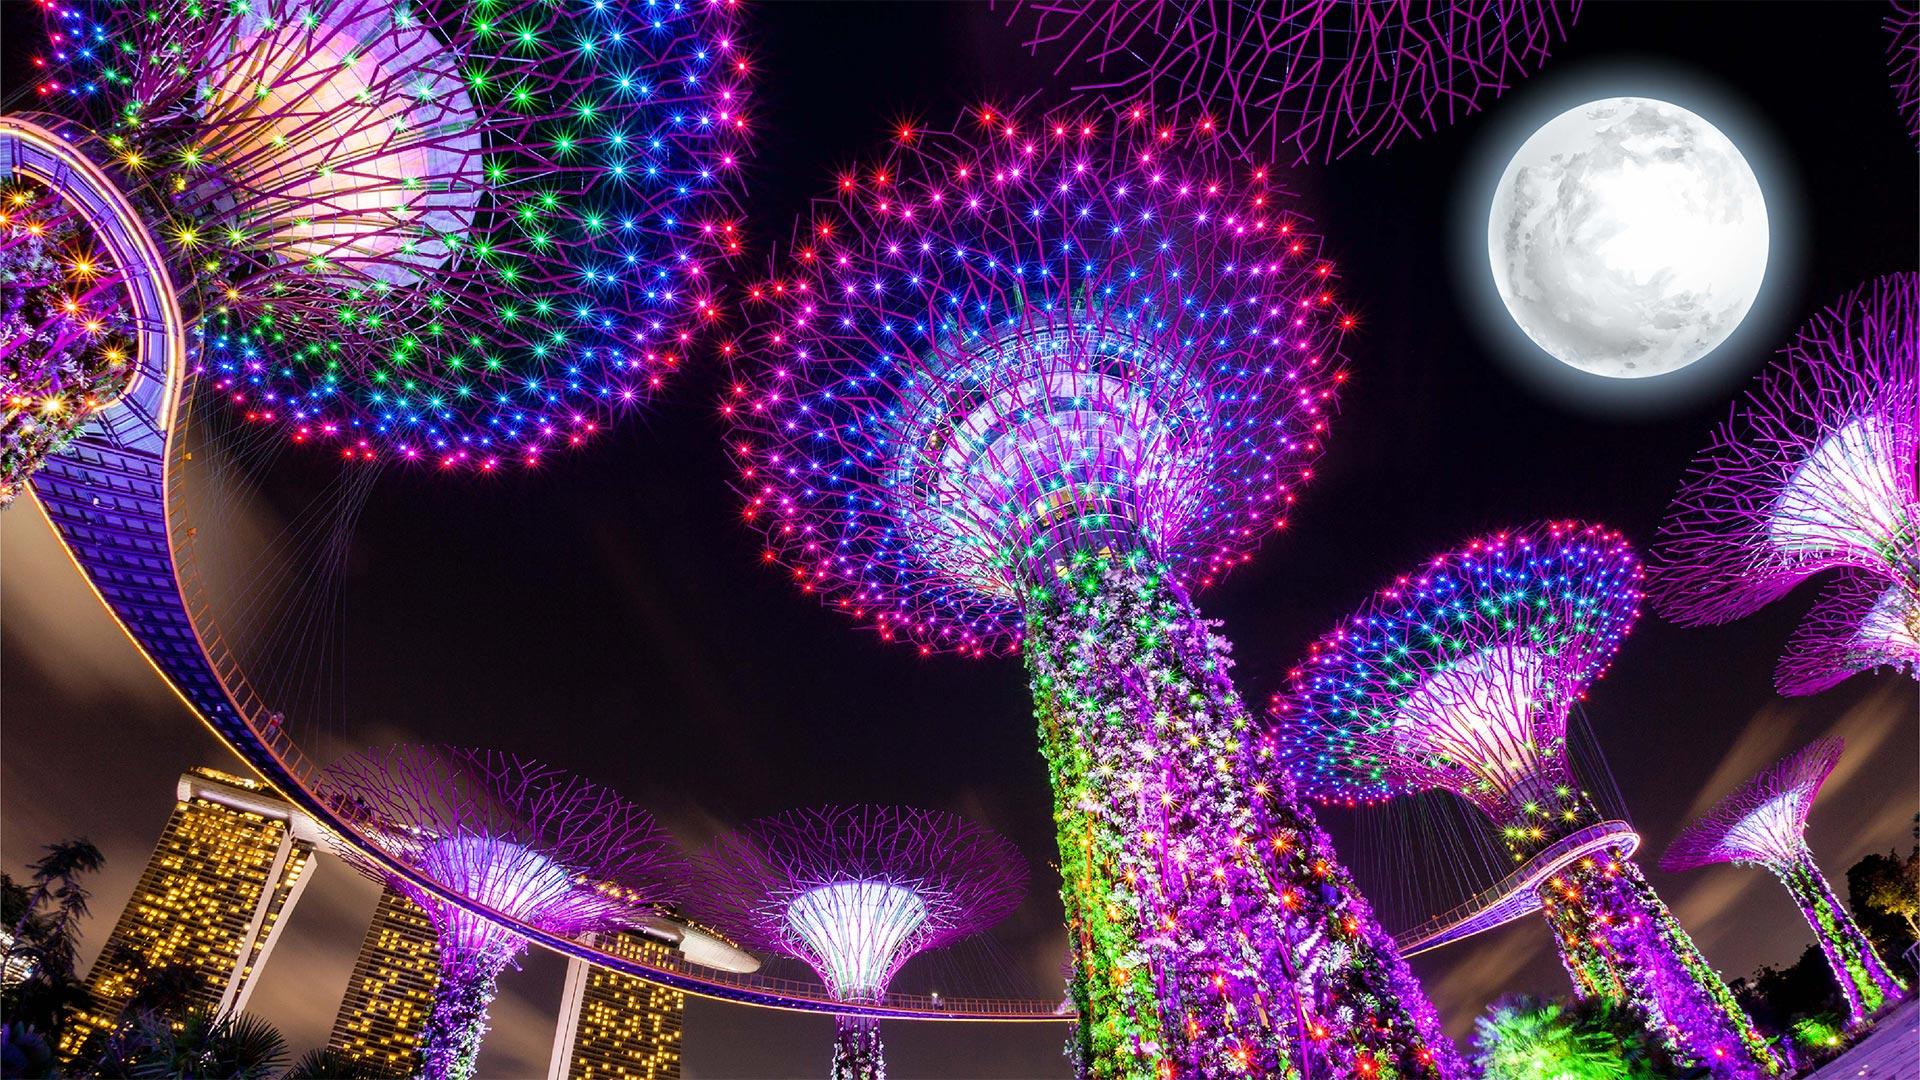 Trình diễn ánh sáng hiện đại trong dịp Trung thu 2022 tại Singapore. (Ảnh: Gardens by the Bay)